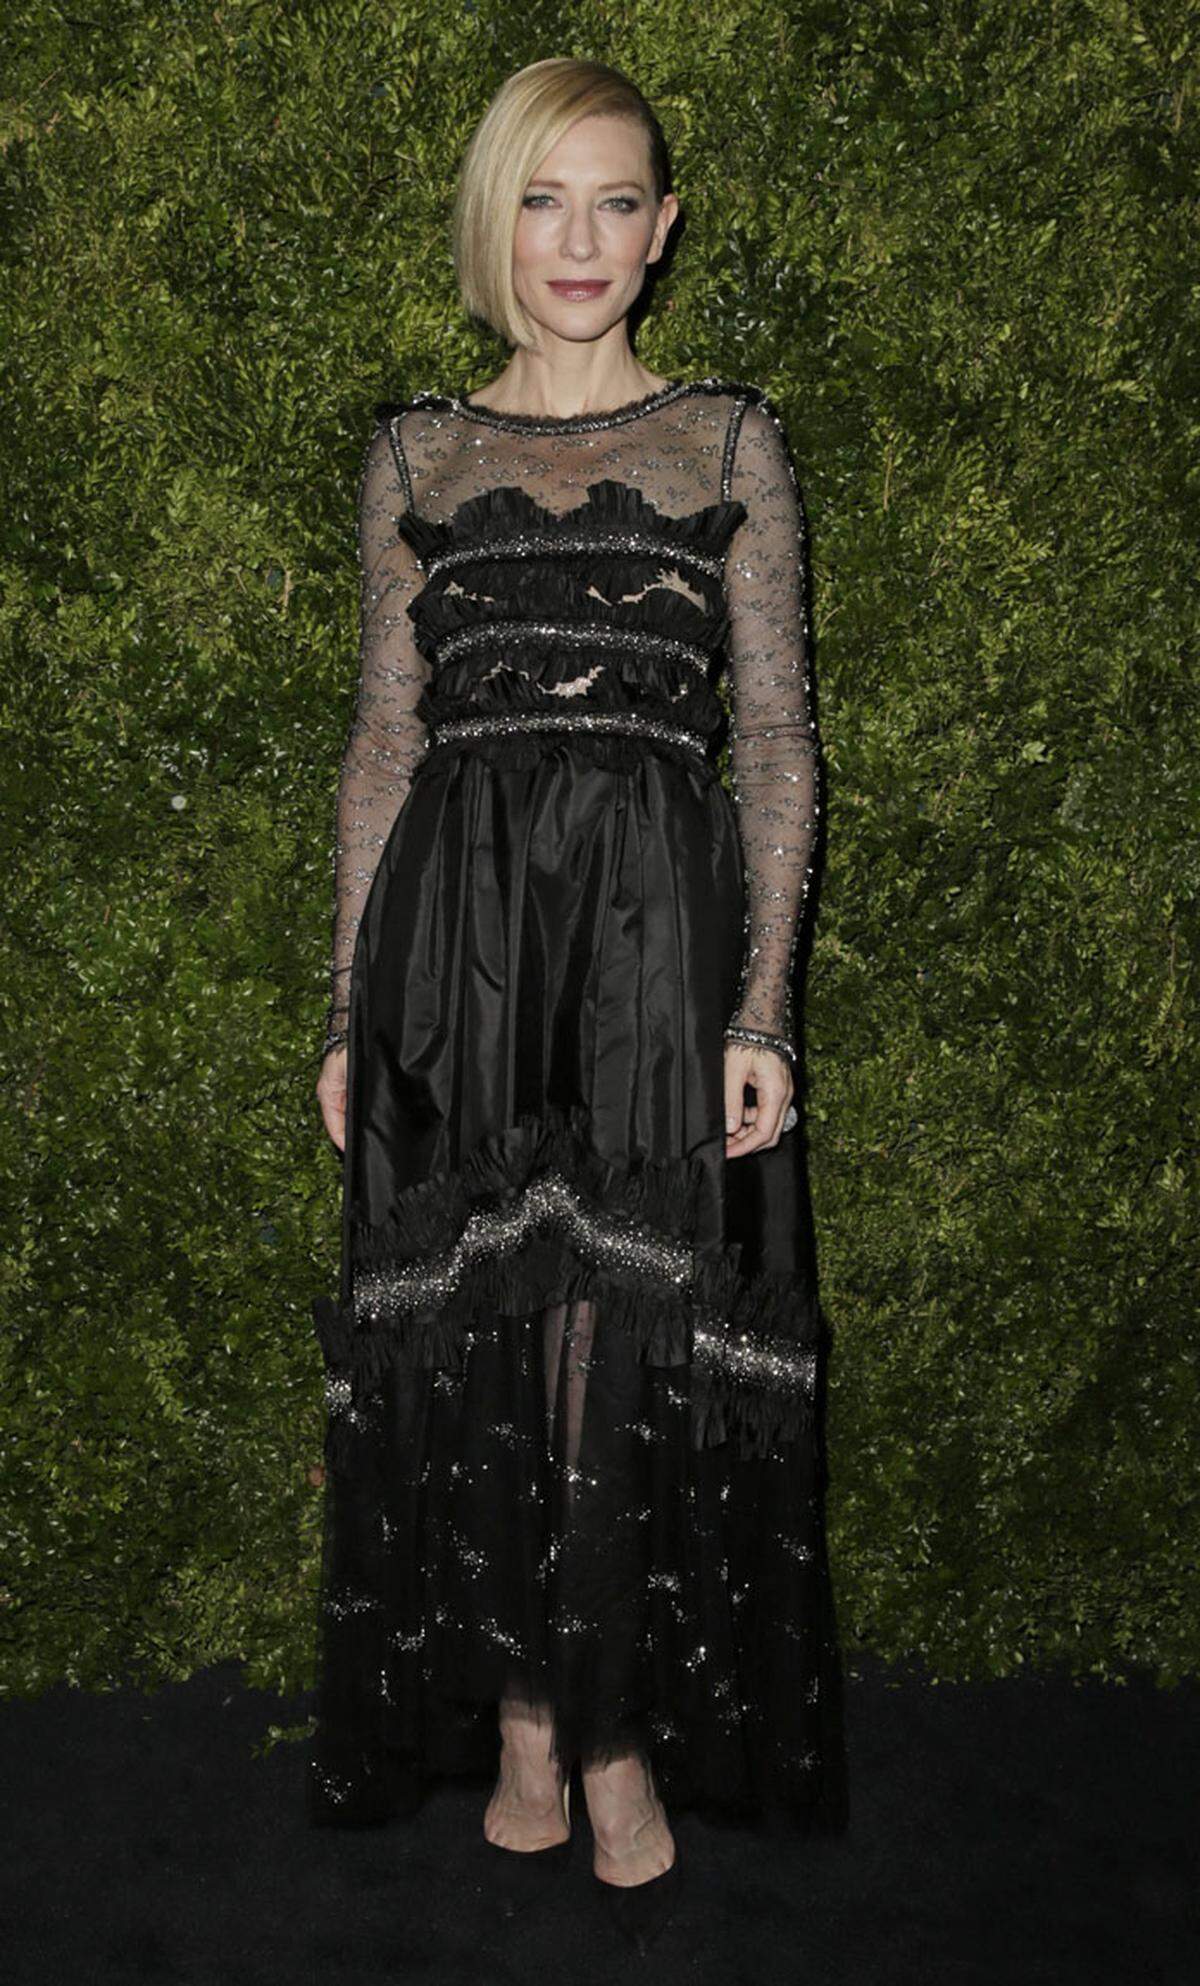 Die australische Schauspielerin Cate Blanchett ist bei einer hochrangig besetzten Gala im New Yorker Museum of Modern Art (MoMA) für ihre darstellerischen Leistungen ausgezeichnet worden. Ihren Preis nahm sie in einer funkelnden schwarzen Robe entgegen.